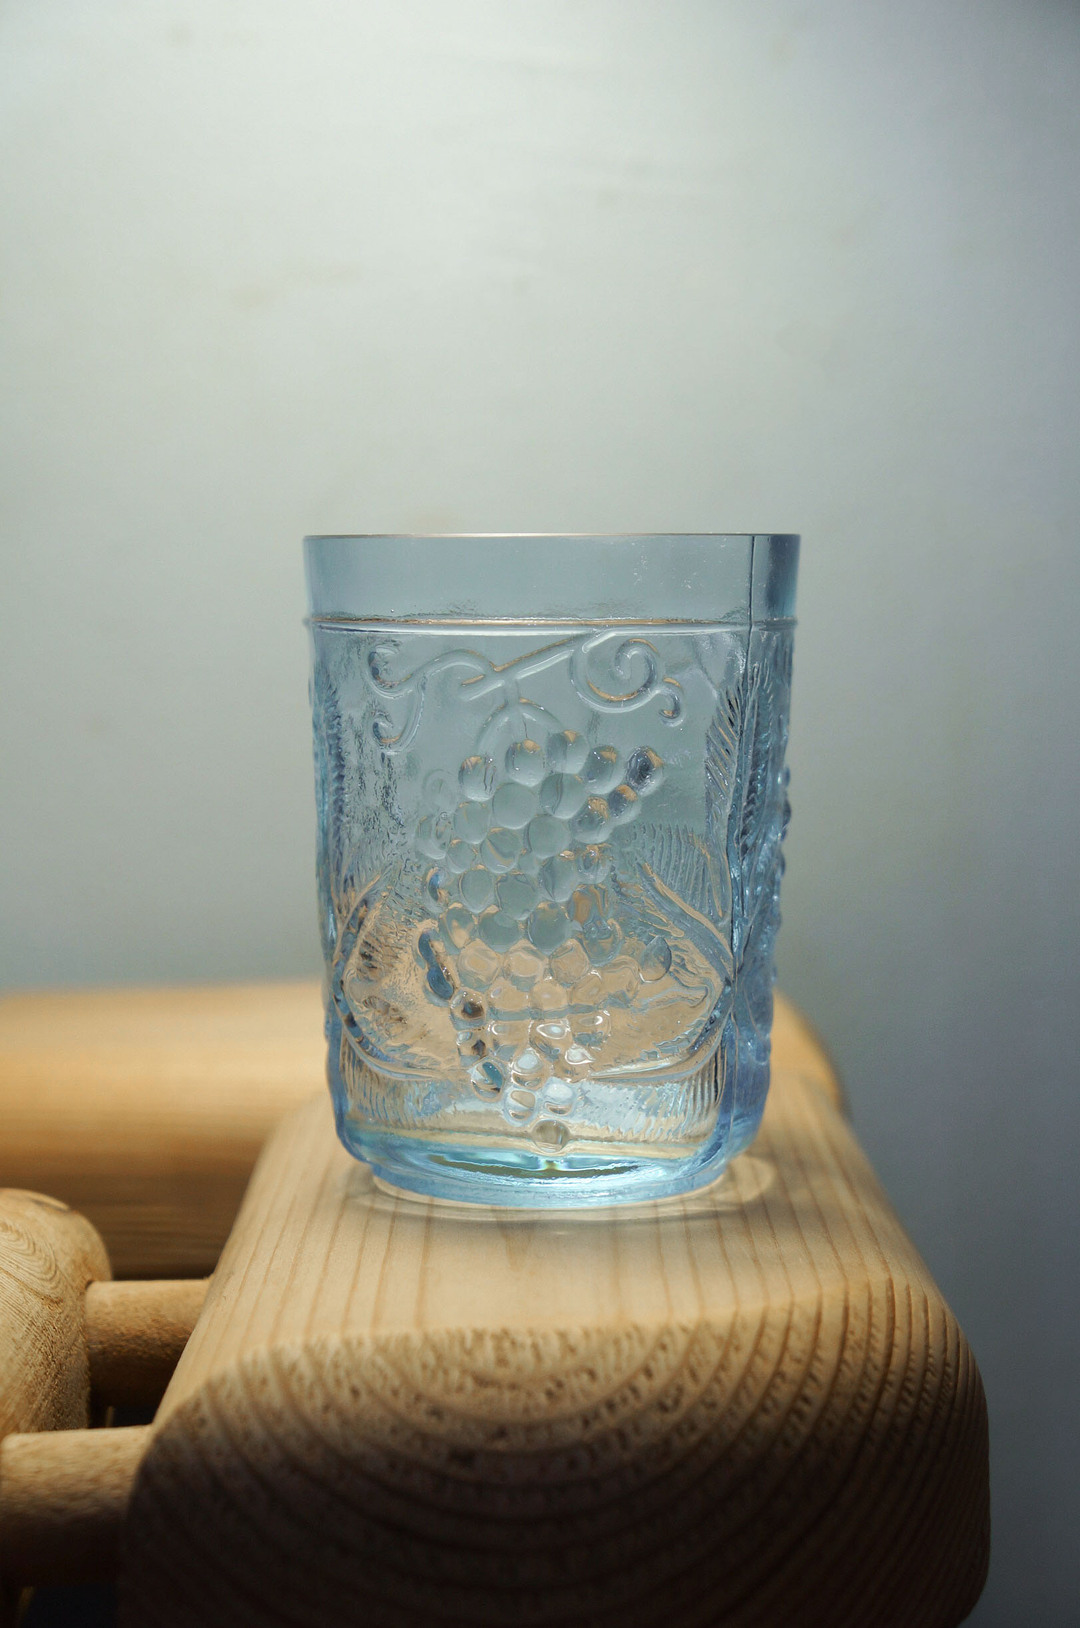 US Vintage Depression Glass Tumbler/アメリカヴィンテージ ディプレッションガラス タンブラー グラス レトロ 食器 ネオジムガラス アメジスト 1